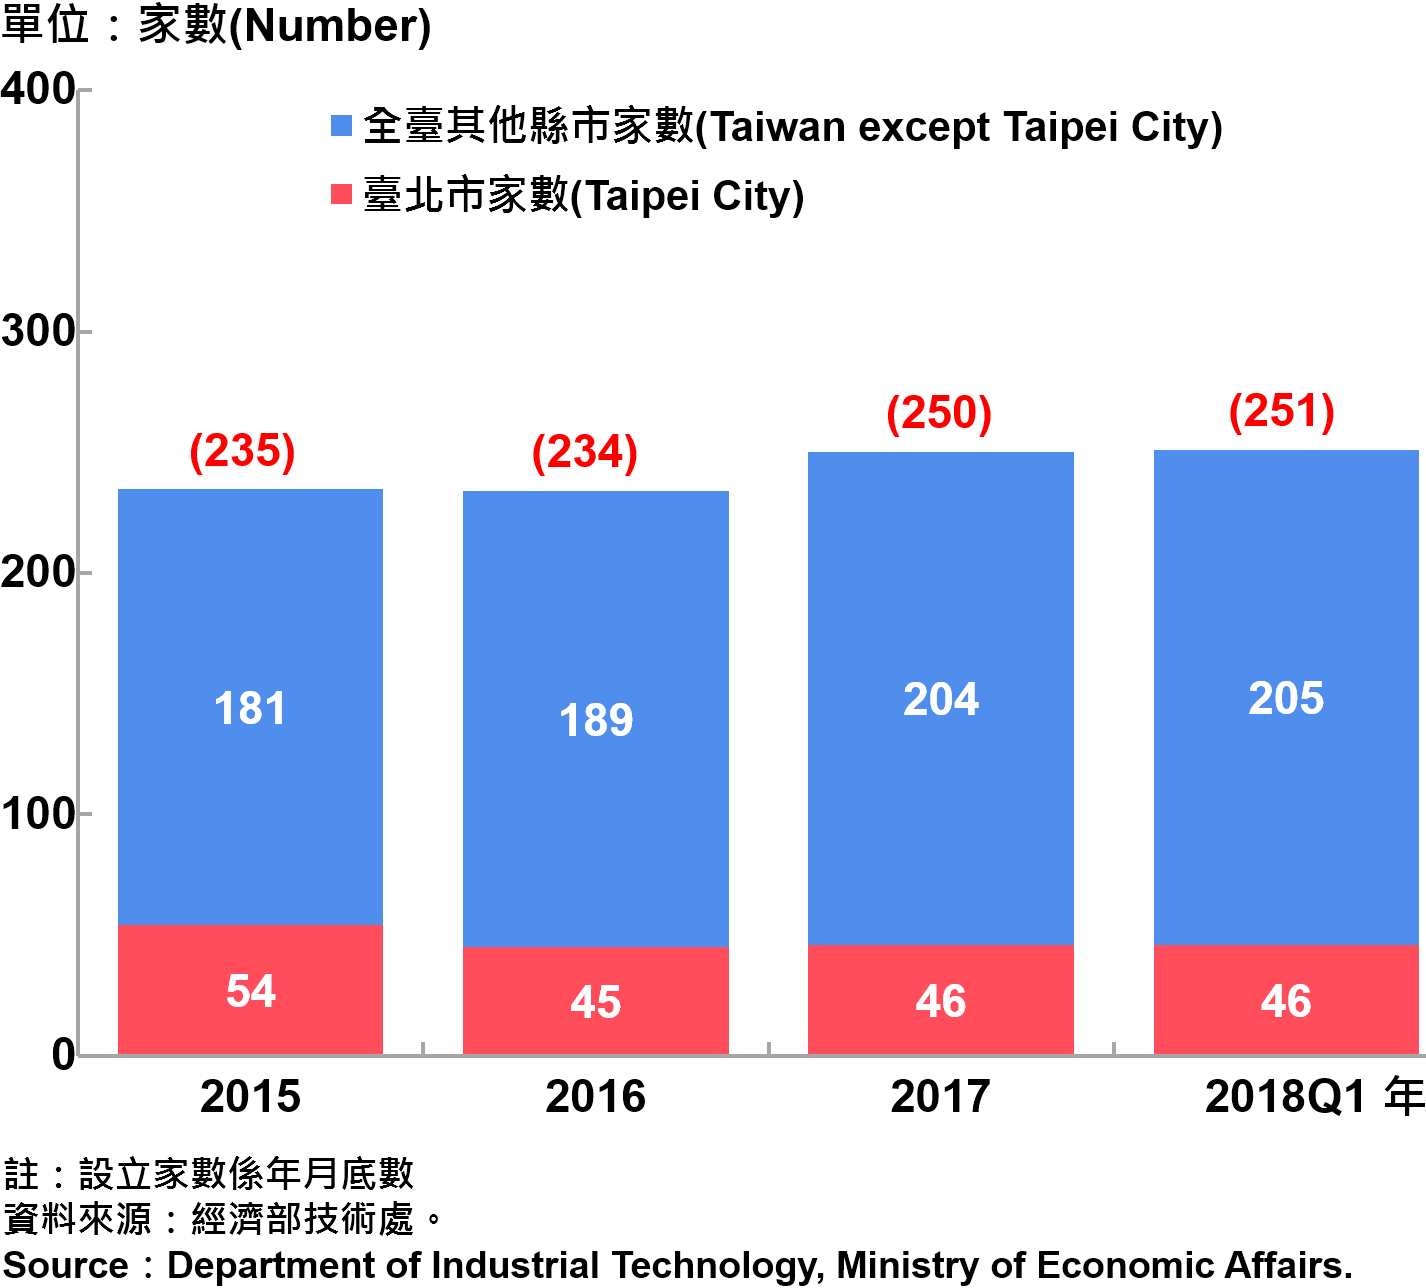 臺北市研發中心設立家數—2018Q1 Number of R&D Centers in Taipei City—2018Q1